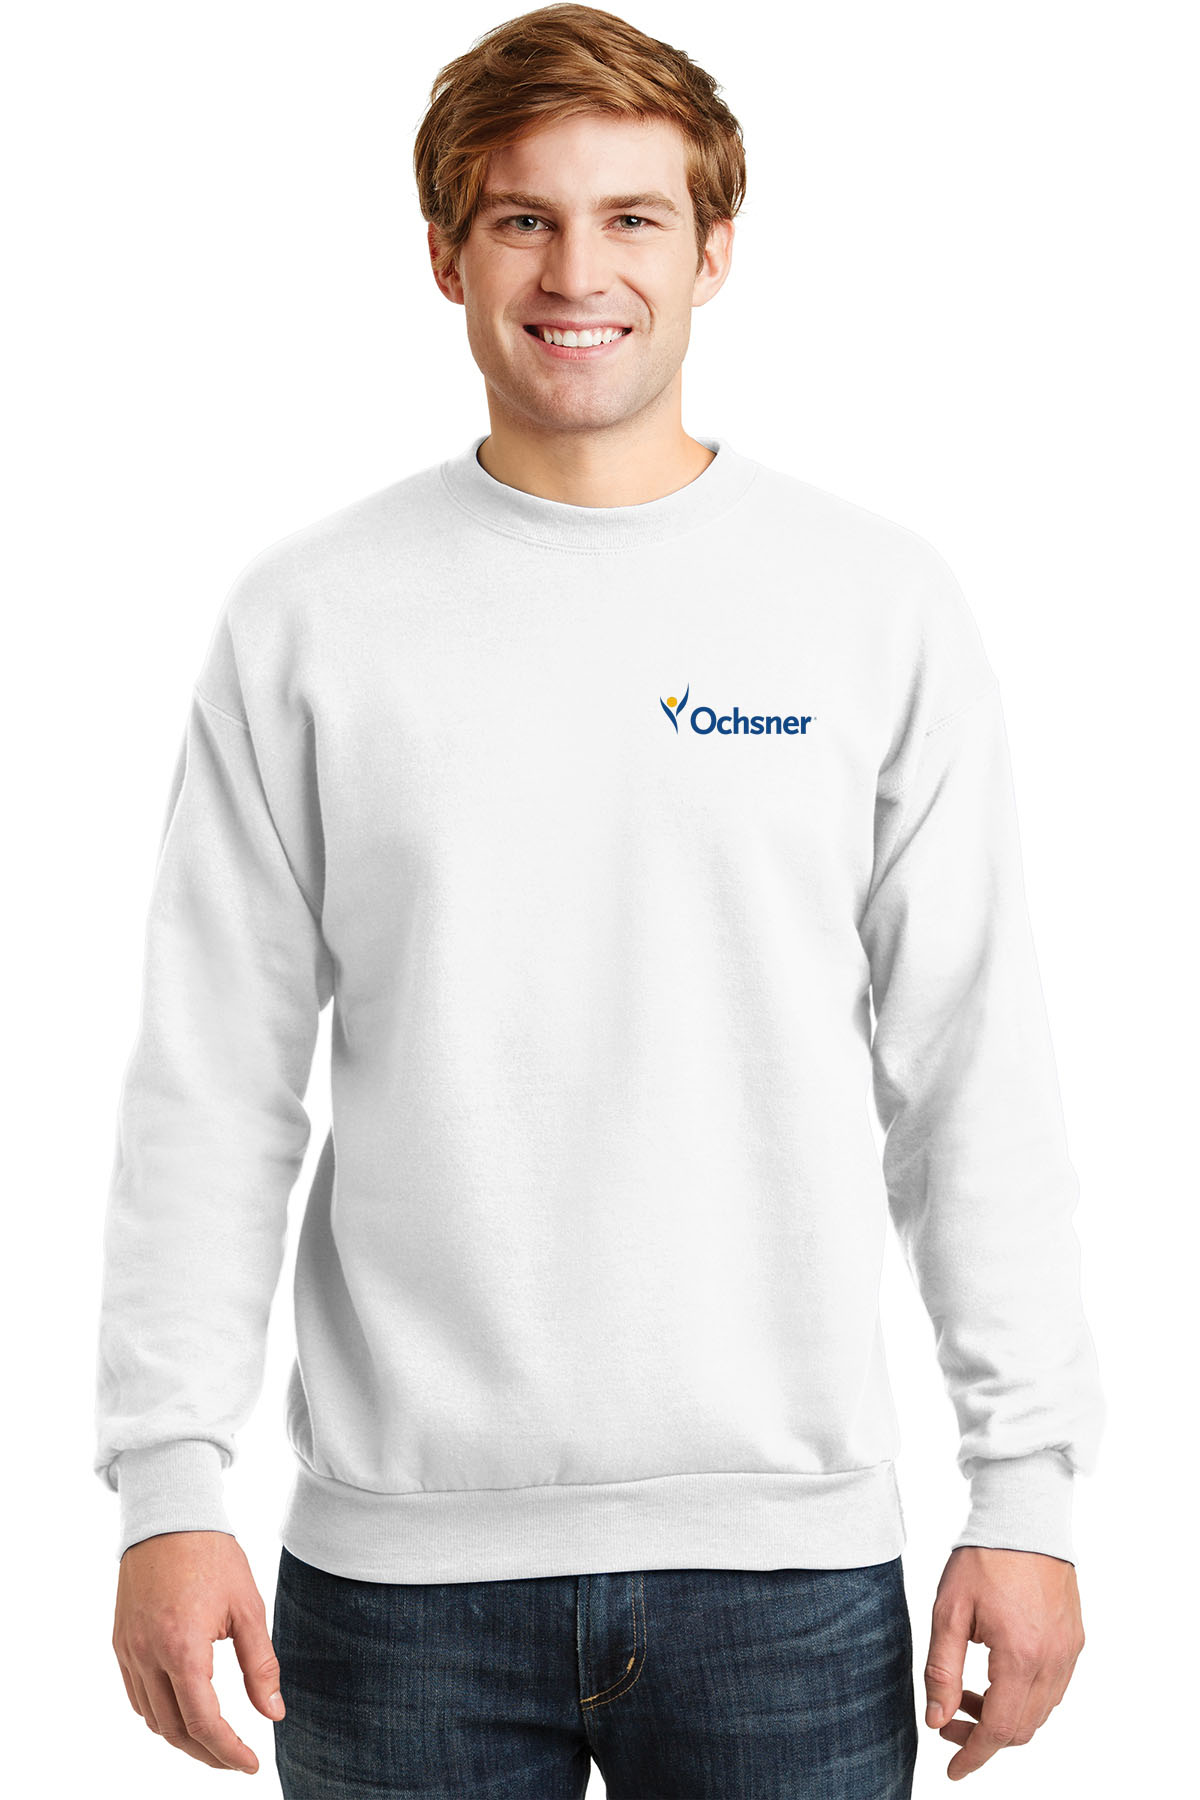 Hanes Unisex Ecosmart Sweatshirt, White, large image number 1